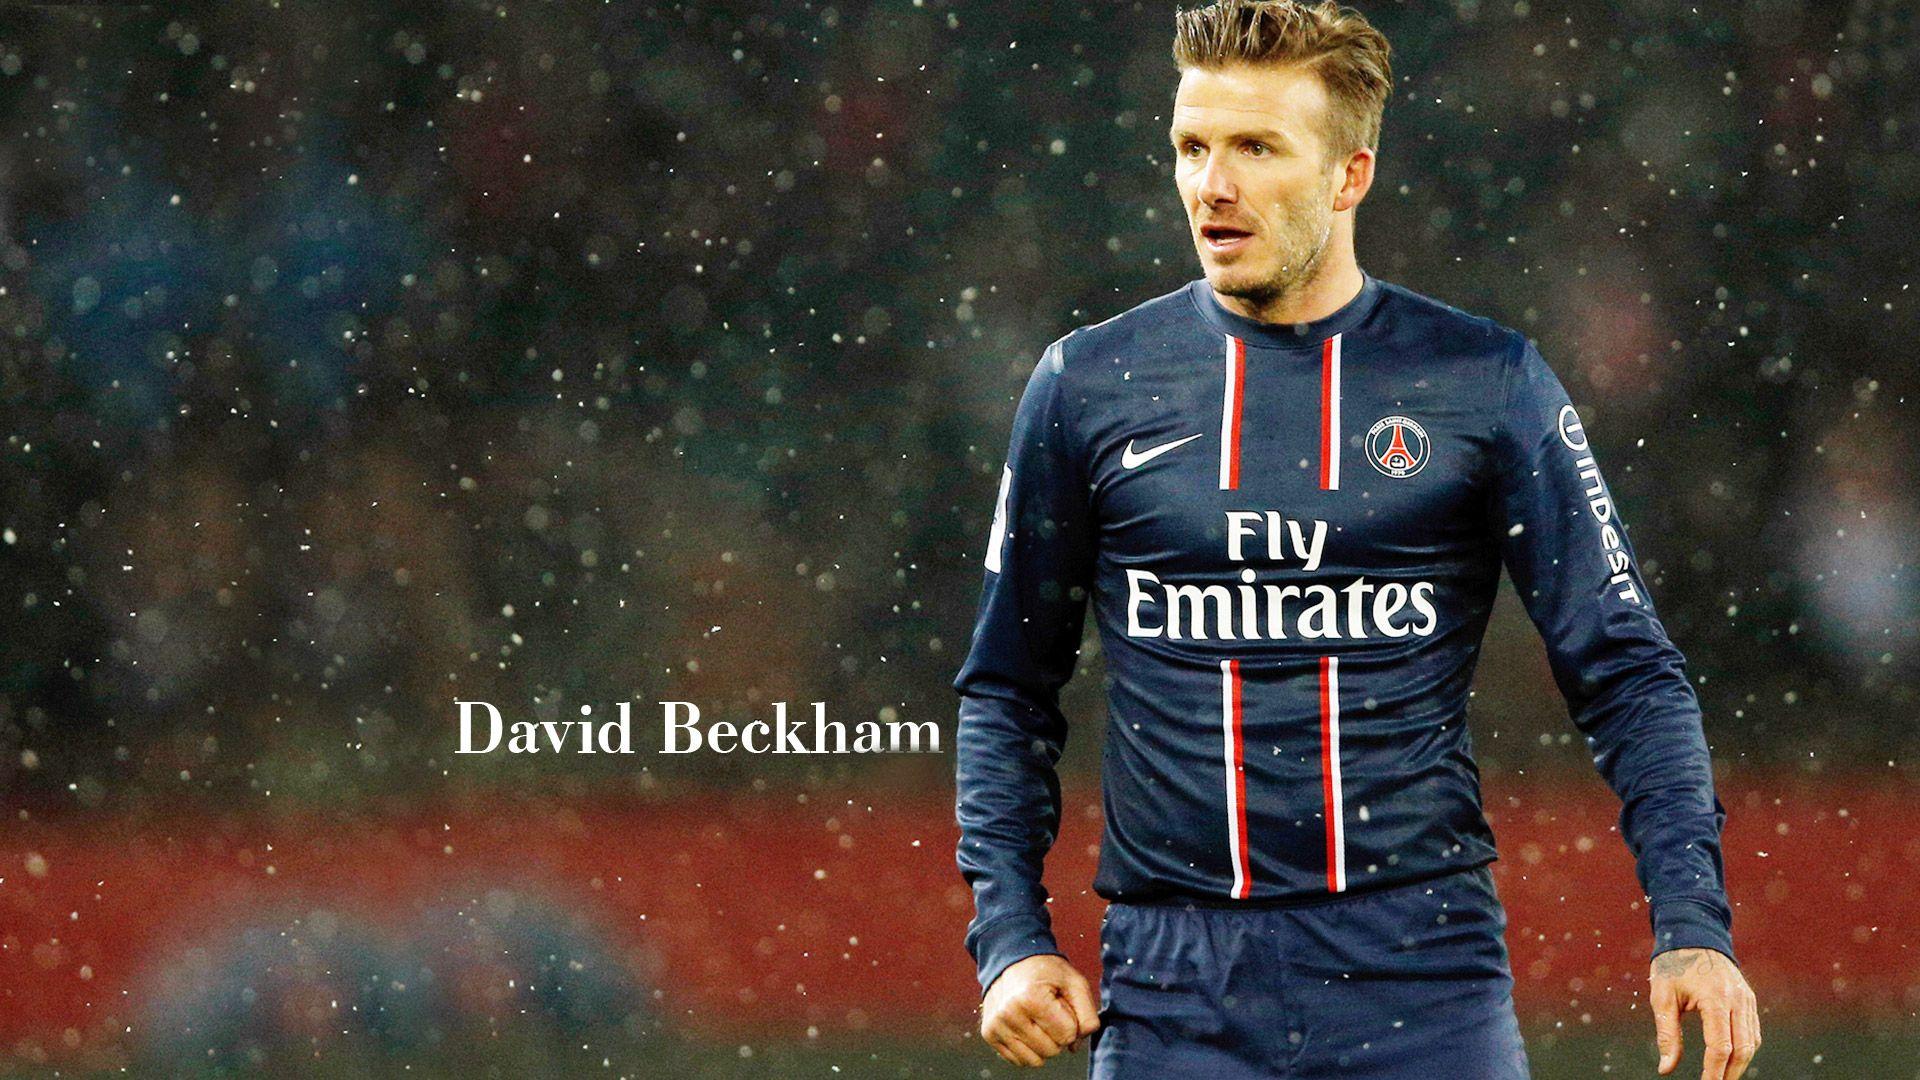 David Beckham Football Wallpapers HD - Wallpaper Cave